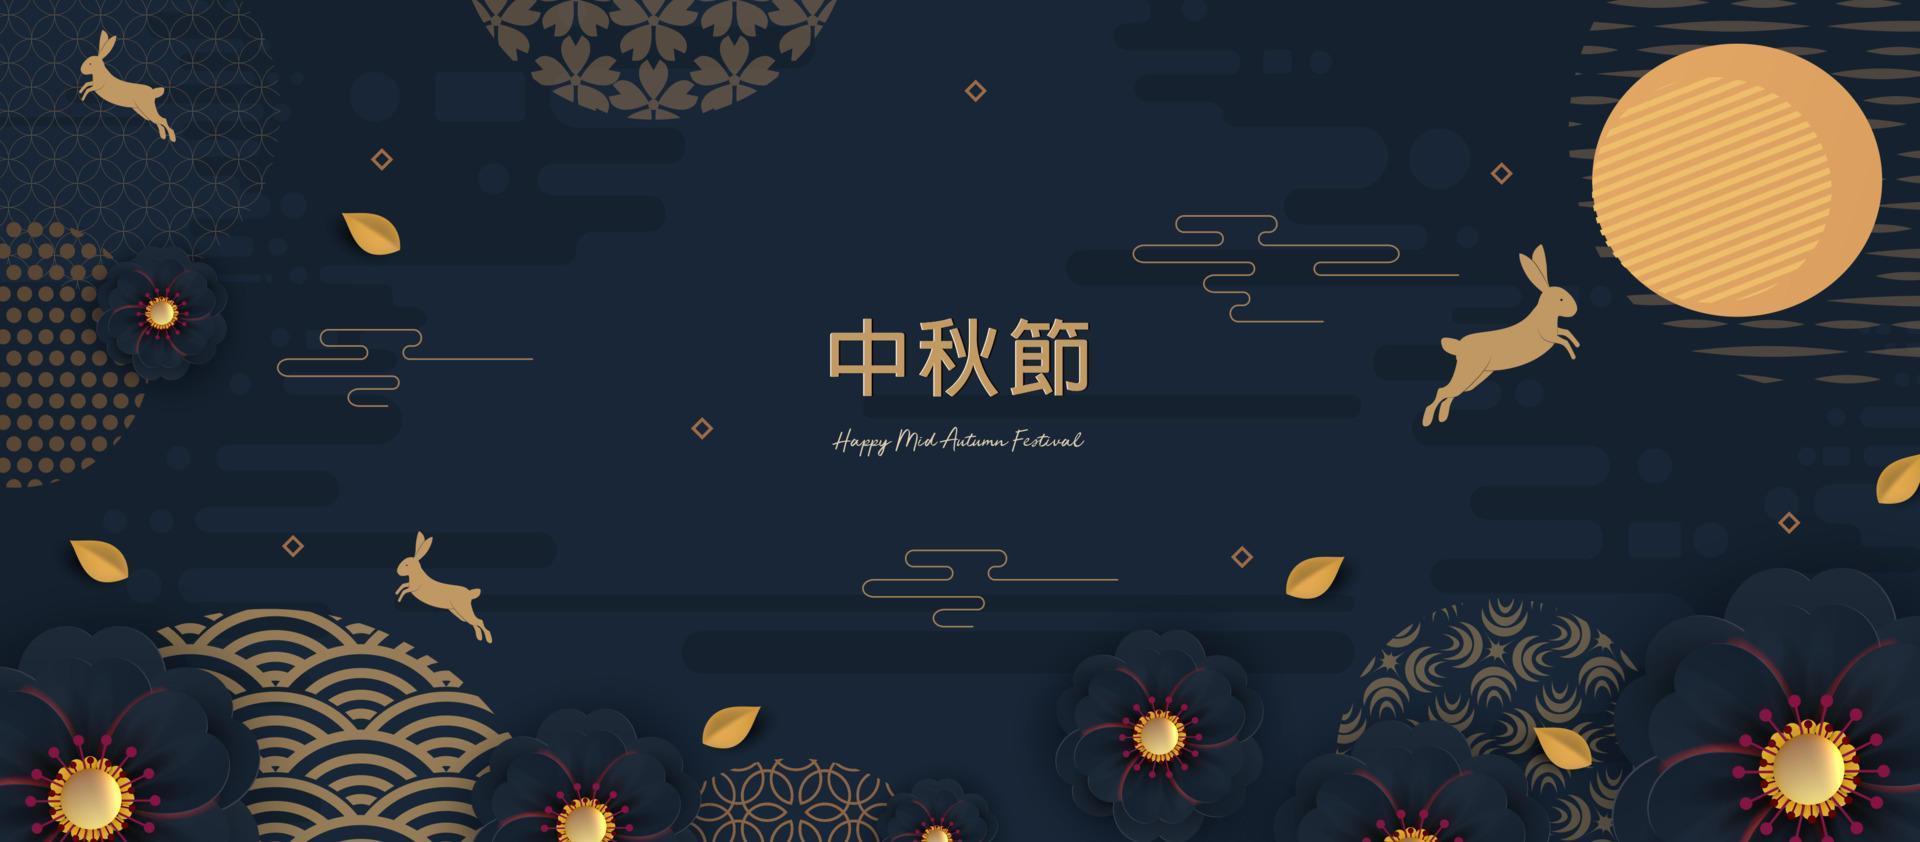 bannerdesign med traditionella kinesiska cirklar mönster som representerar fullmånen, kinesisk text glad mitten av hösten, guld på mörkblått. vektor platt stil.